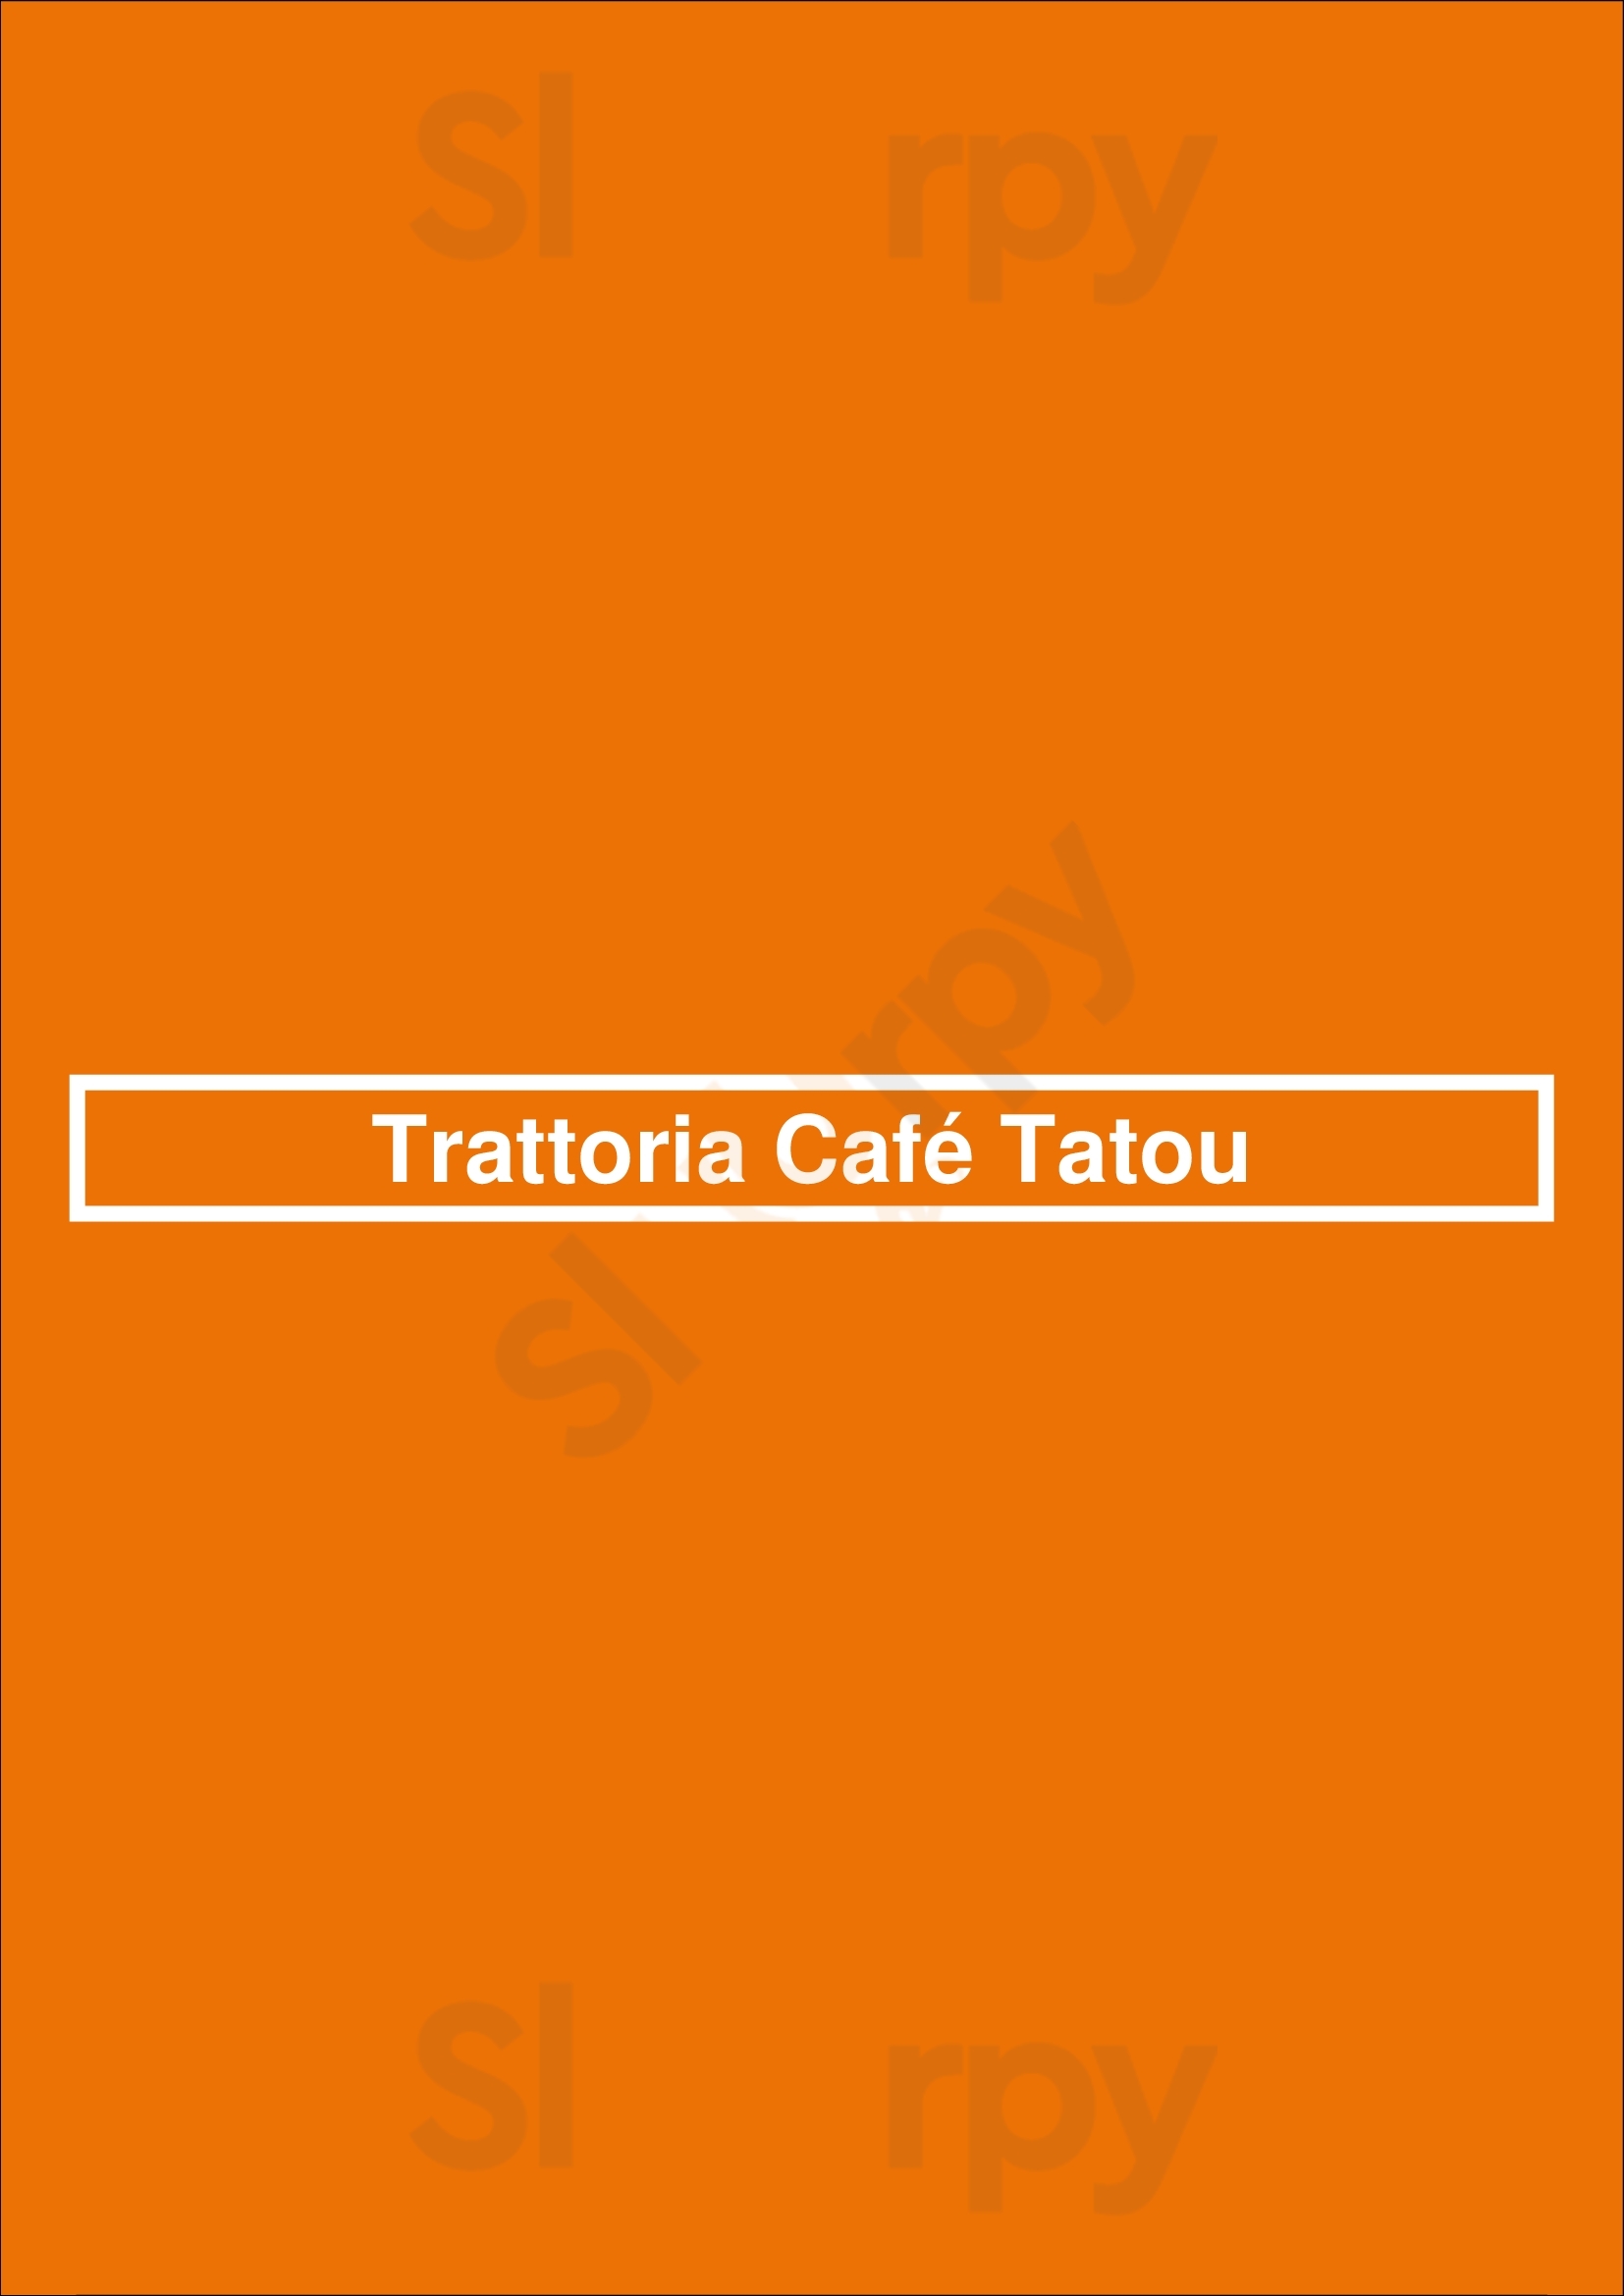 Trattoria Café Tatou Berlin Menu - 1